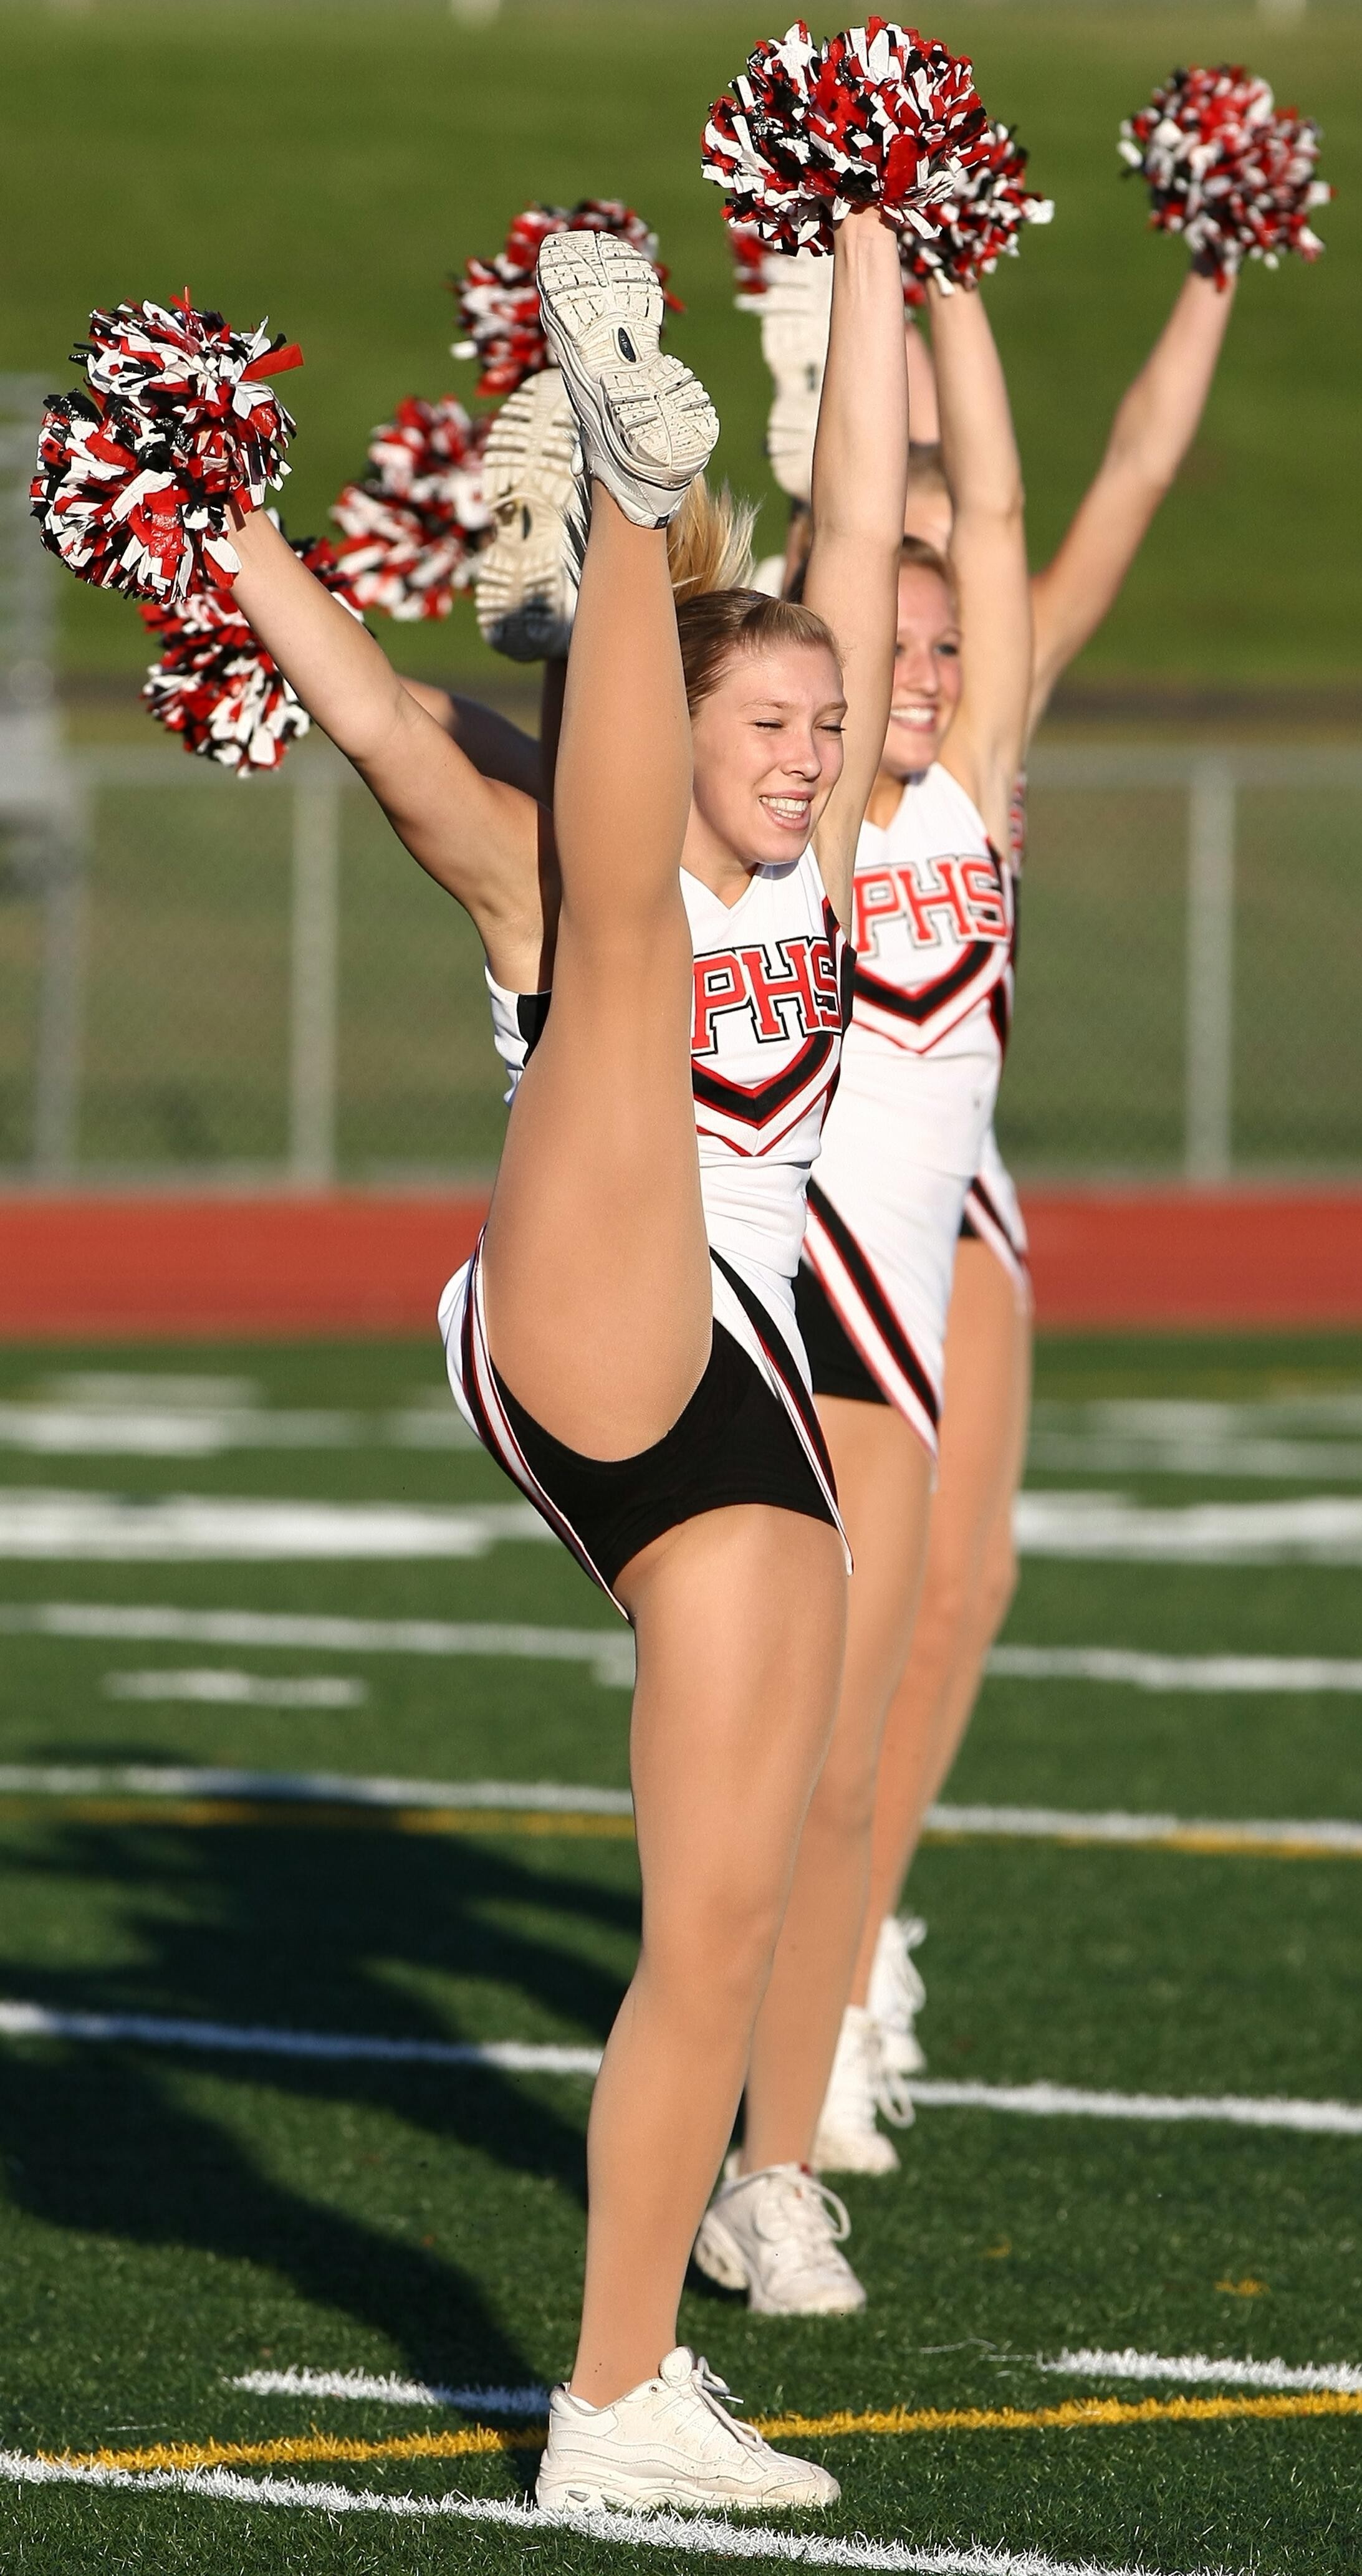 Cheerleader high kick